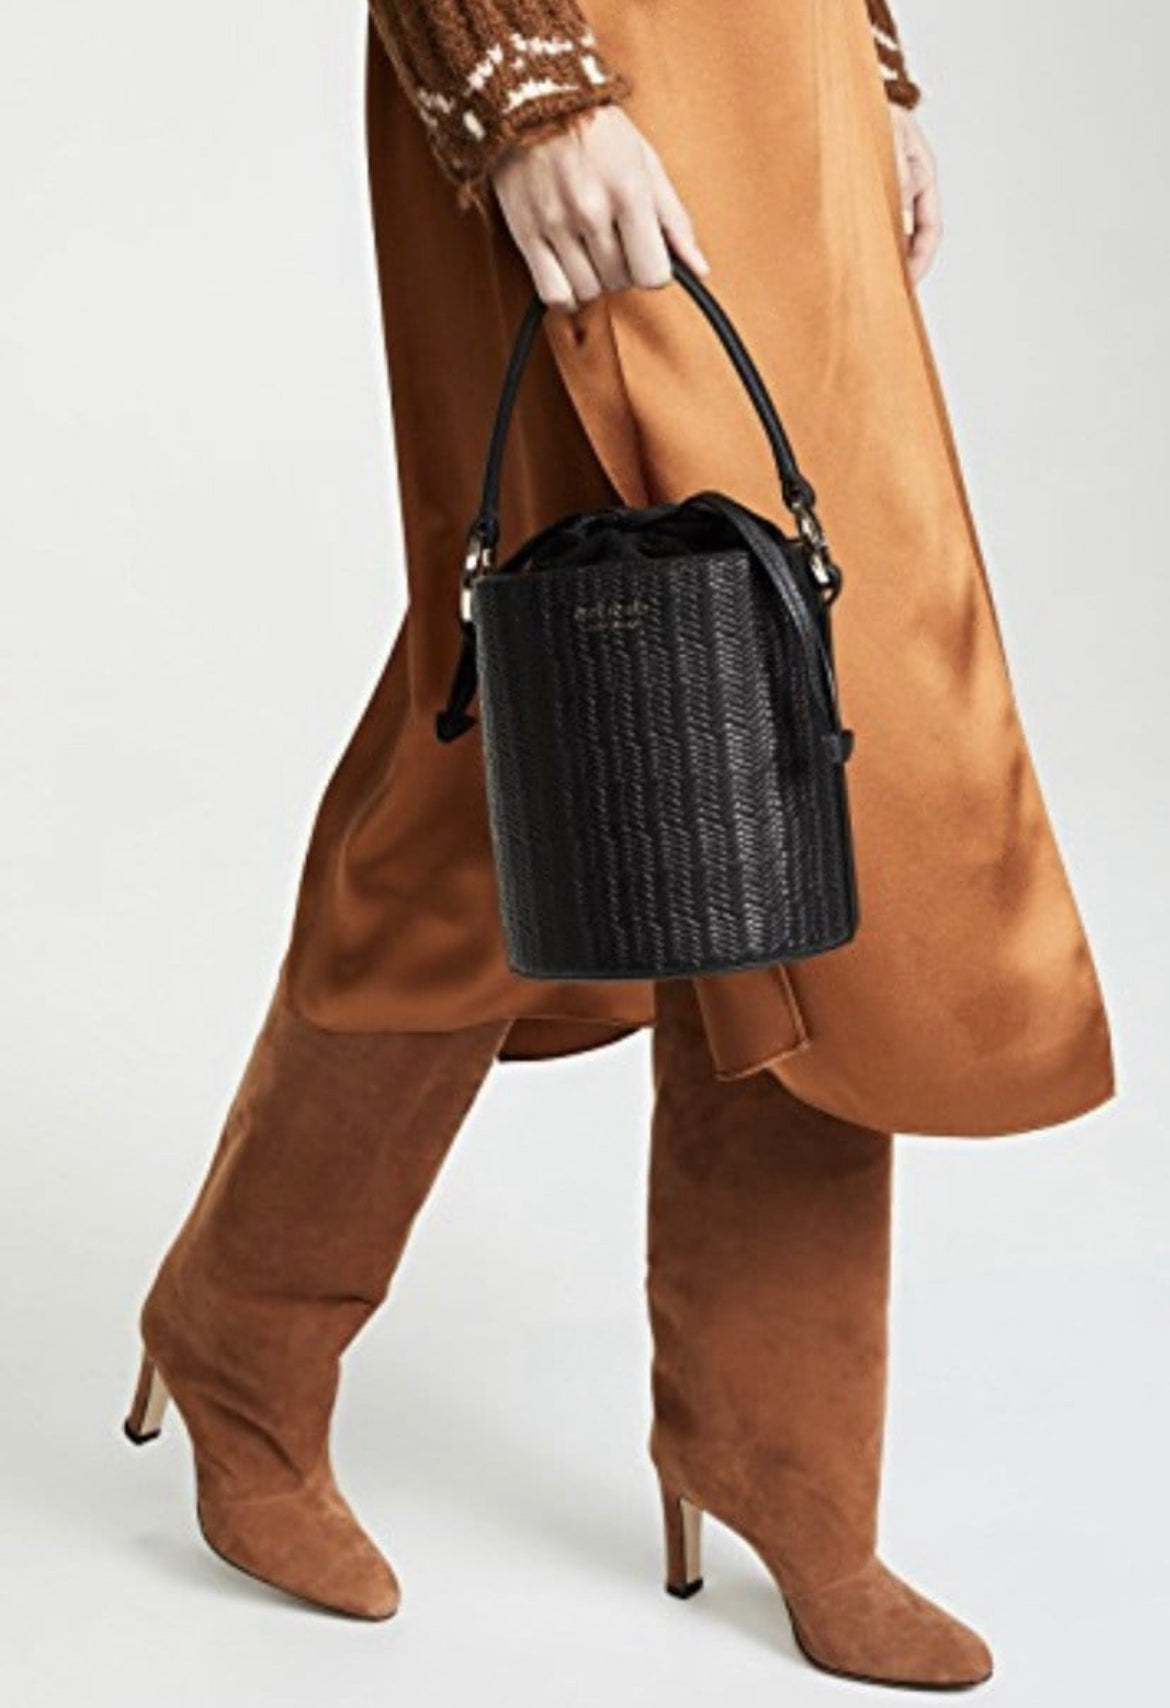 New Meli Melo Santina Mini Velvet Bucket Bag, Black, MSRP $585